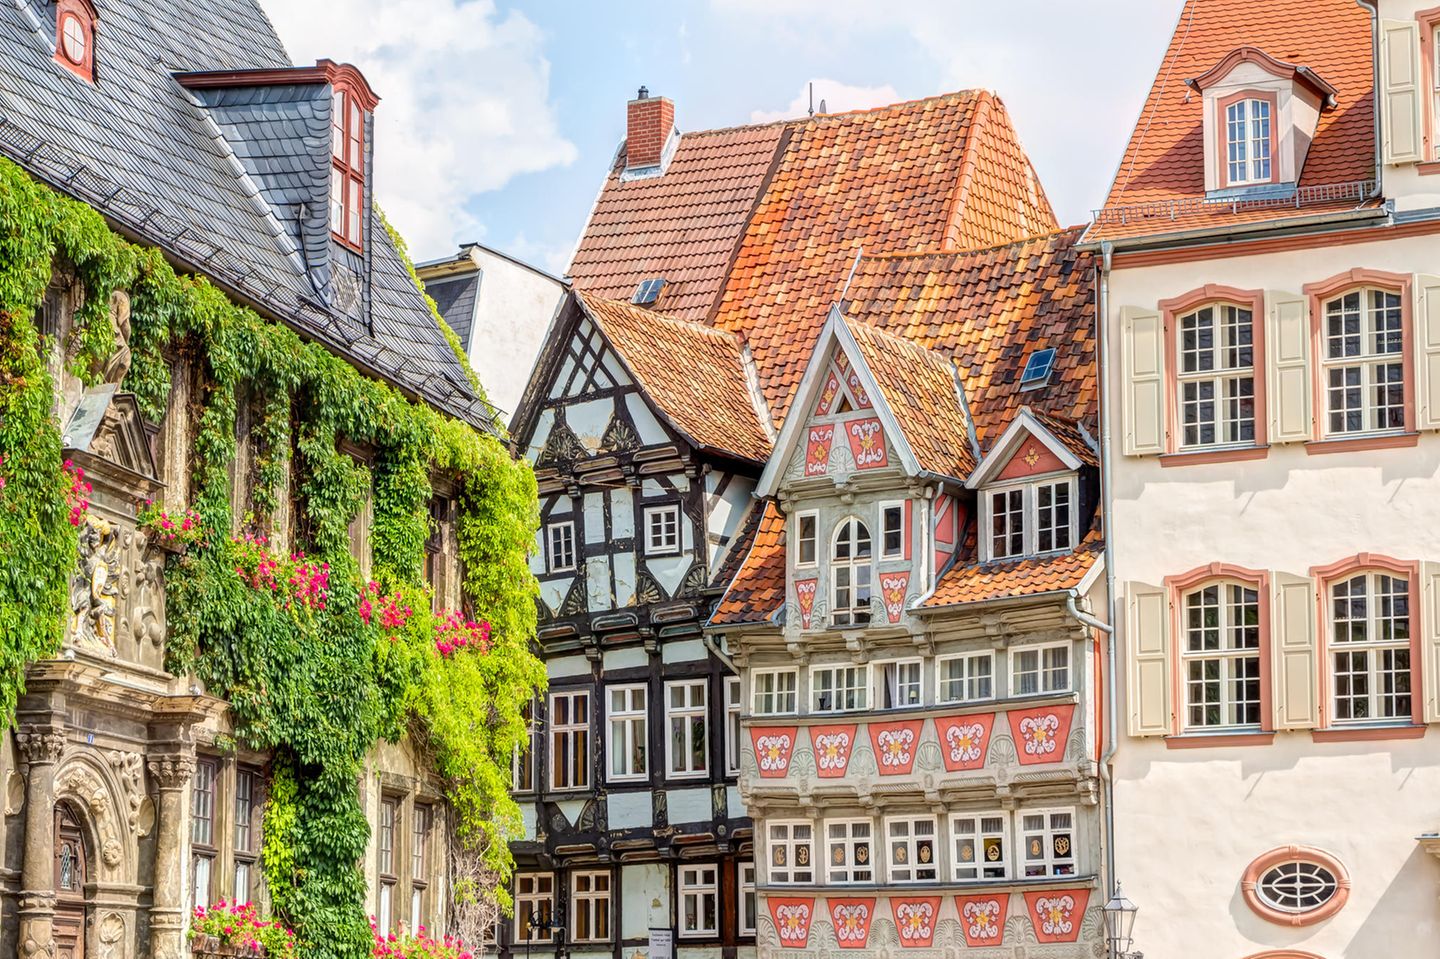 Hausfassaden in der Altstadt von Quedlinburg